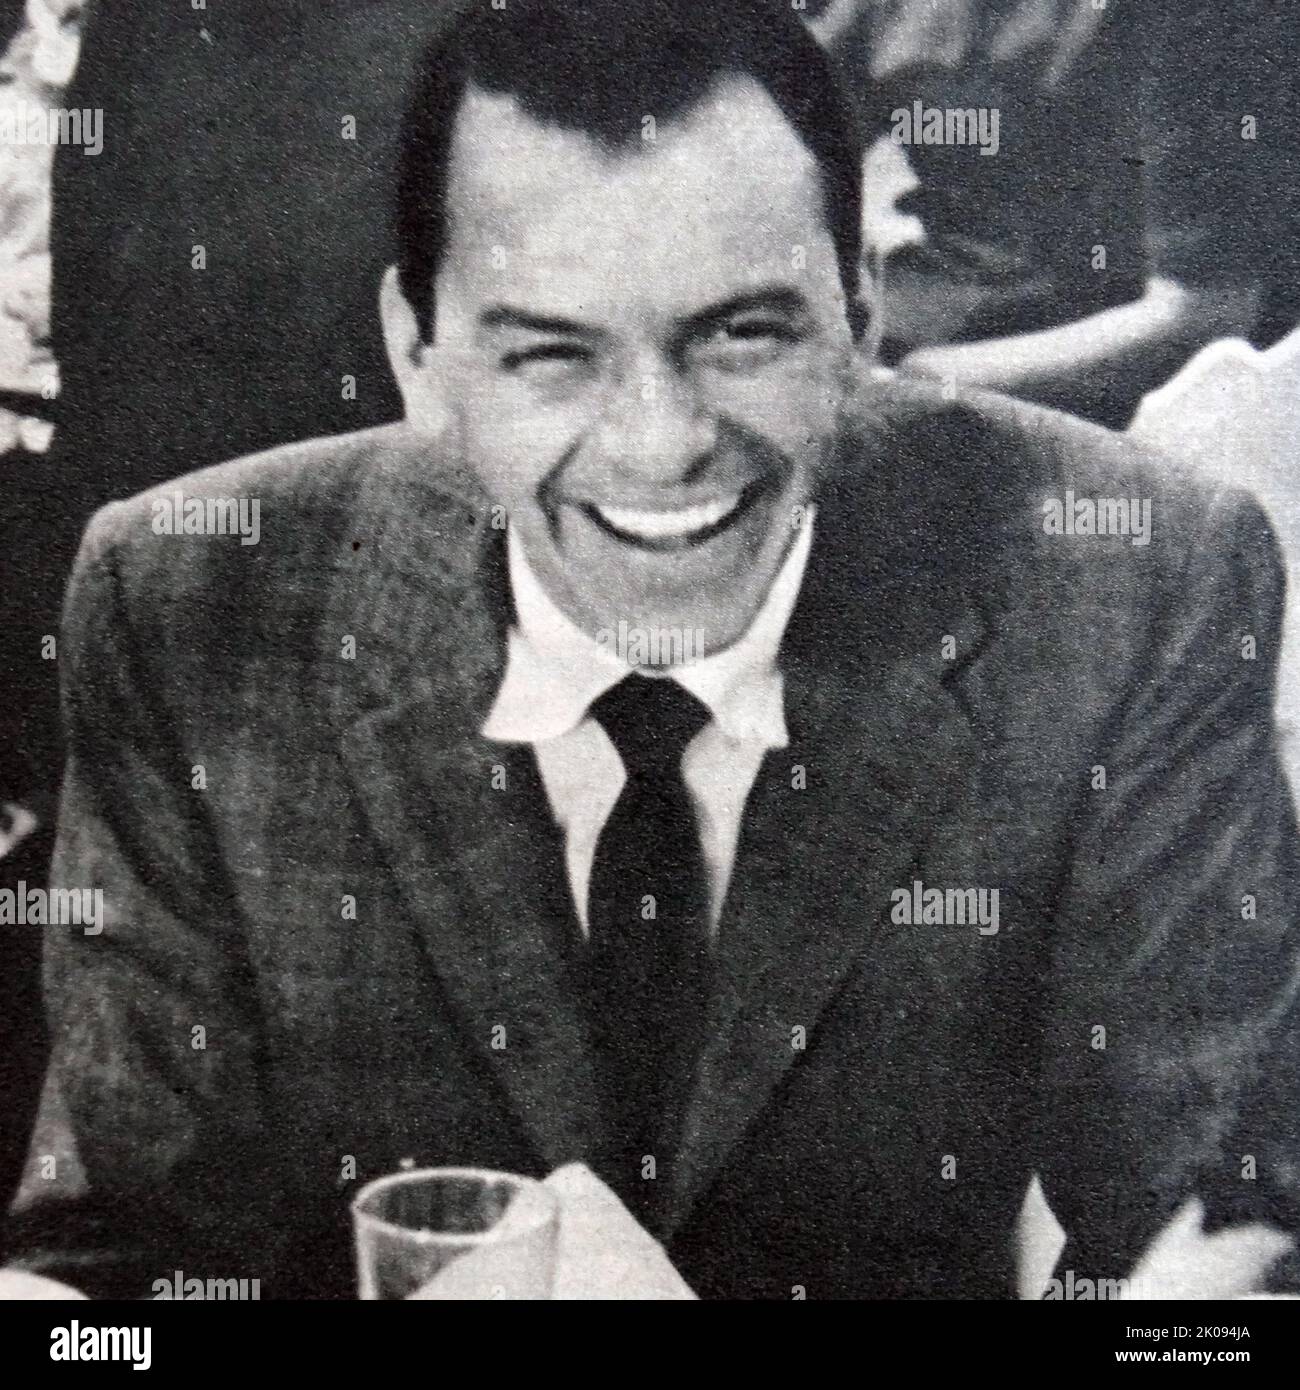 Taglio di giornale con fotografia di Frank Sinatra. Francis Albert Sinatra (12 dicembre 1915 20th – 14 maggio 1998) è stato un . È uno degli artisti musicali più venduti di tutti i tempi, avendo venduto circa 150 milioni di dischi in tutto il mondo. Foto Stock